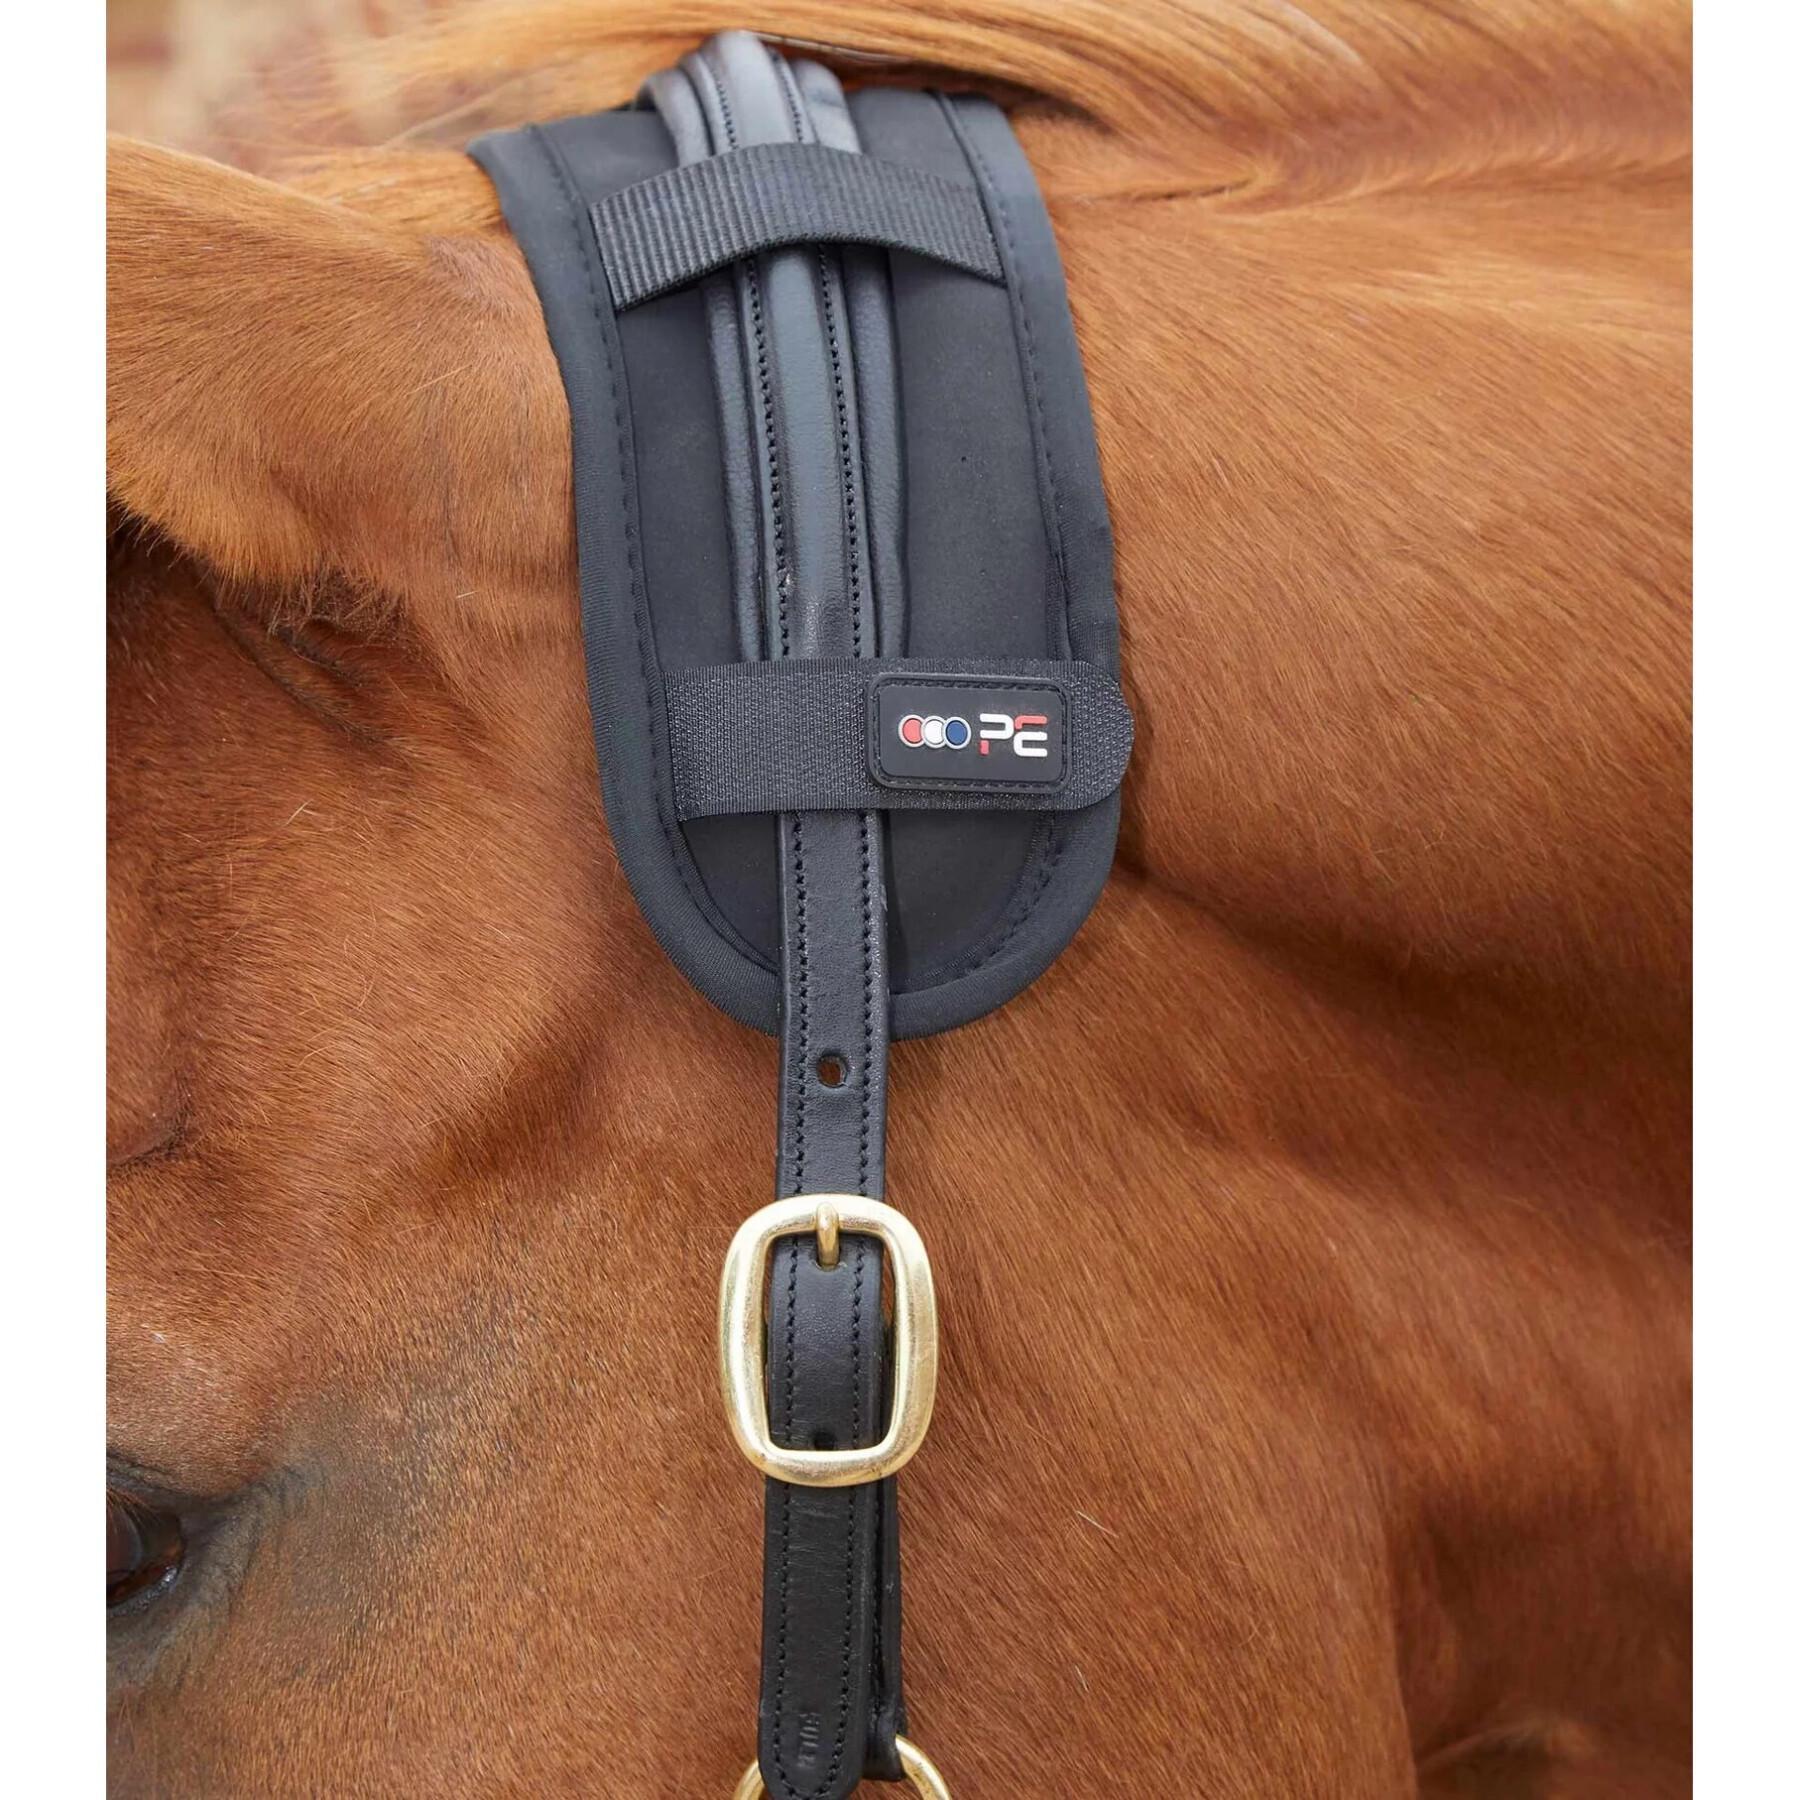 Magnetische halsbeschermer voor paarden Premier Equine Magni-Teque